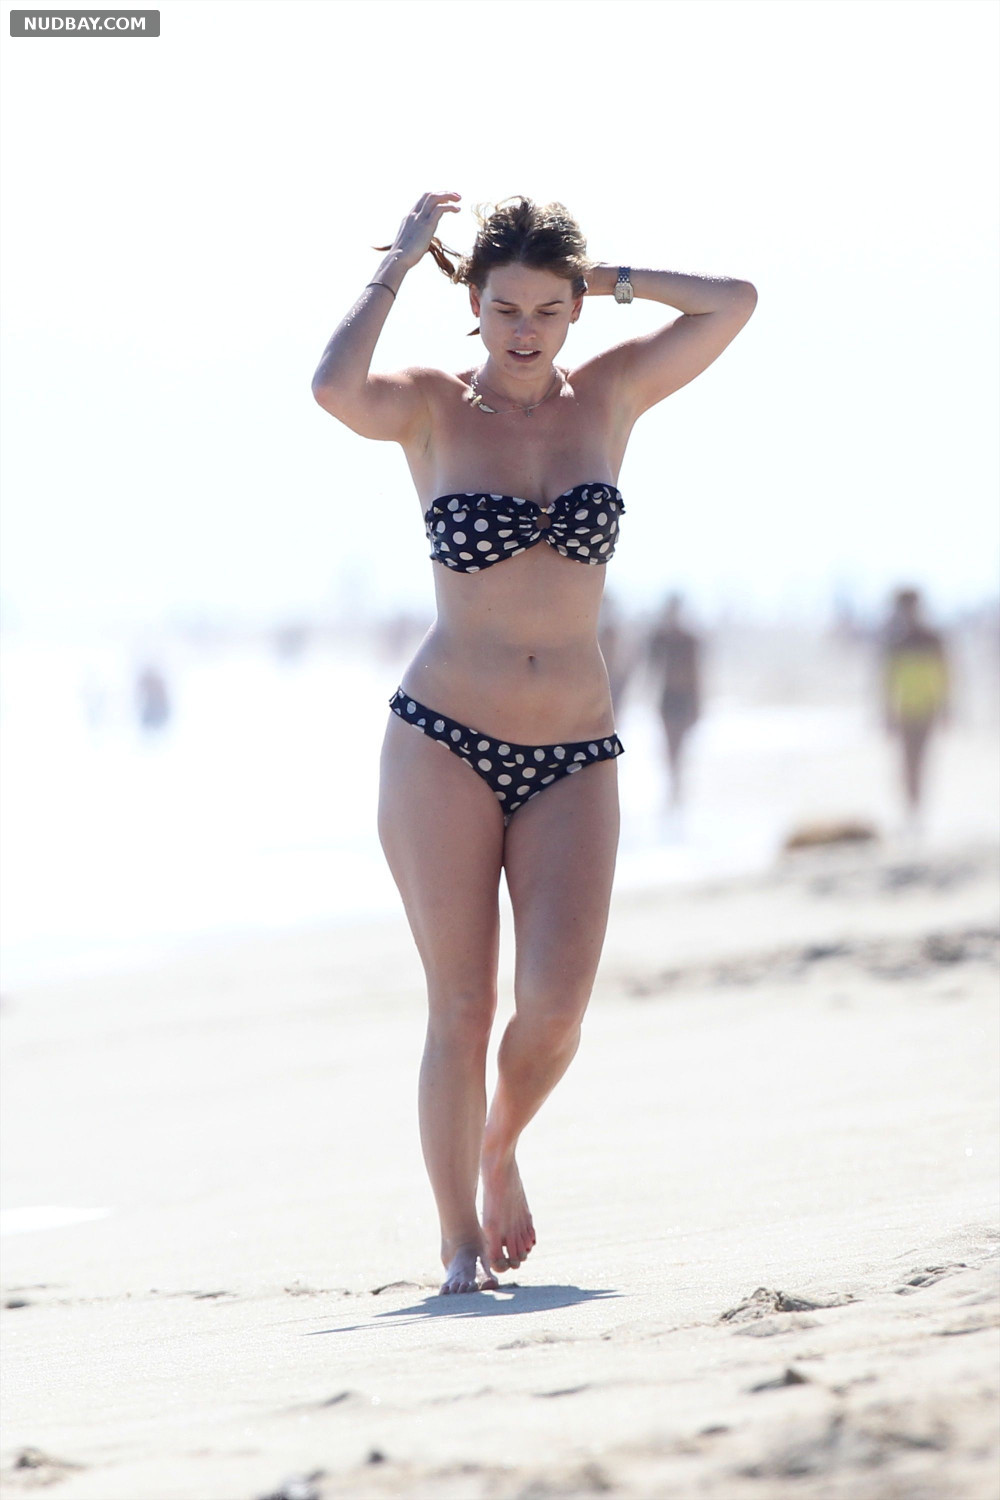 Alice Eve nude in a Bikini at a Beach in Miami 2014